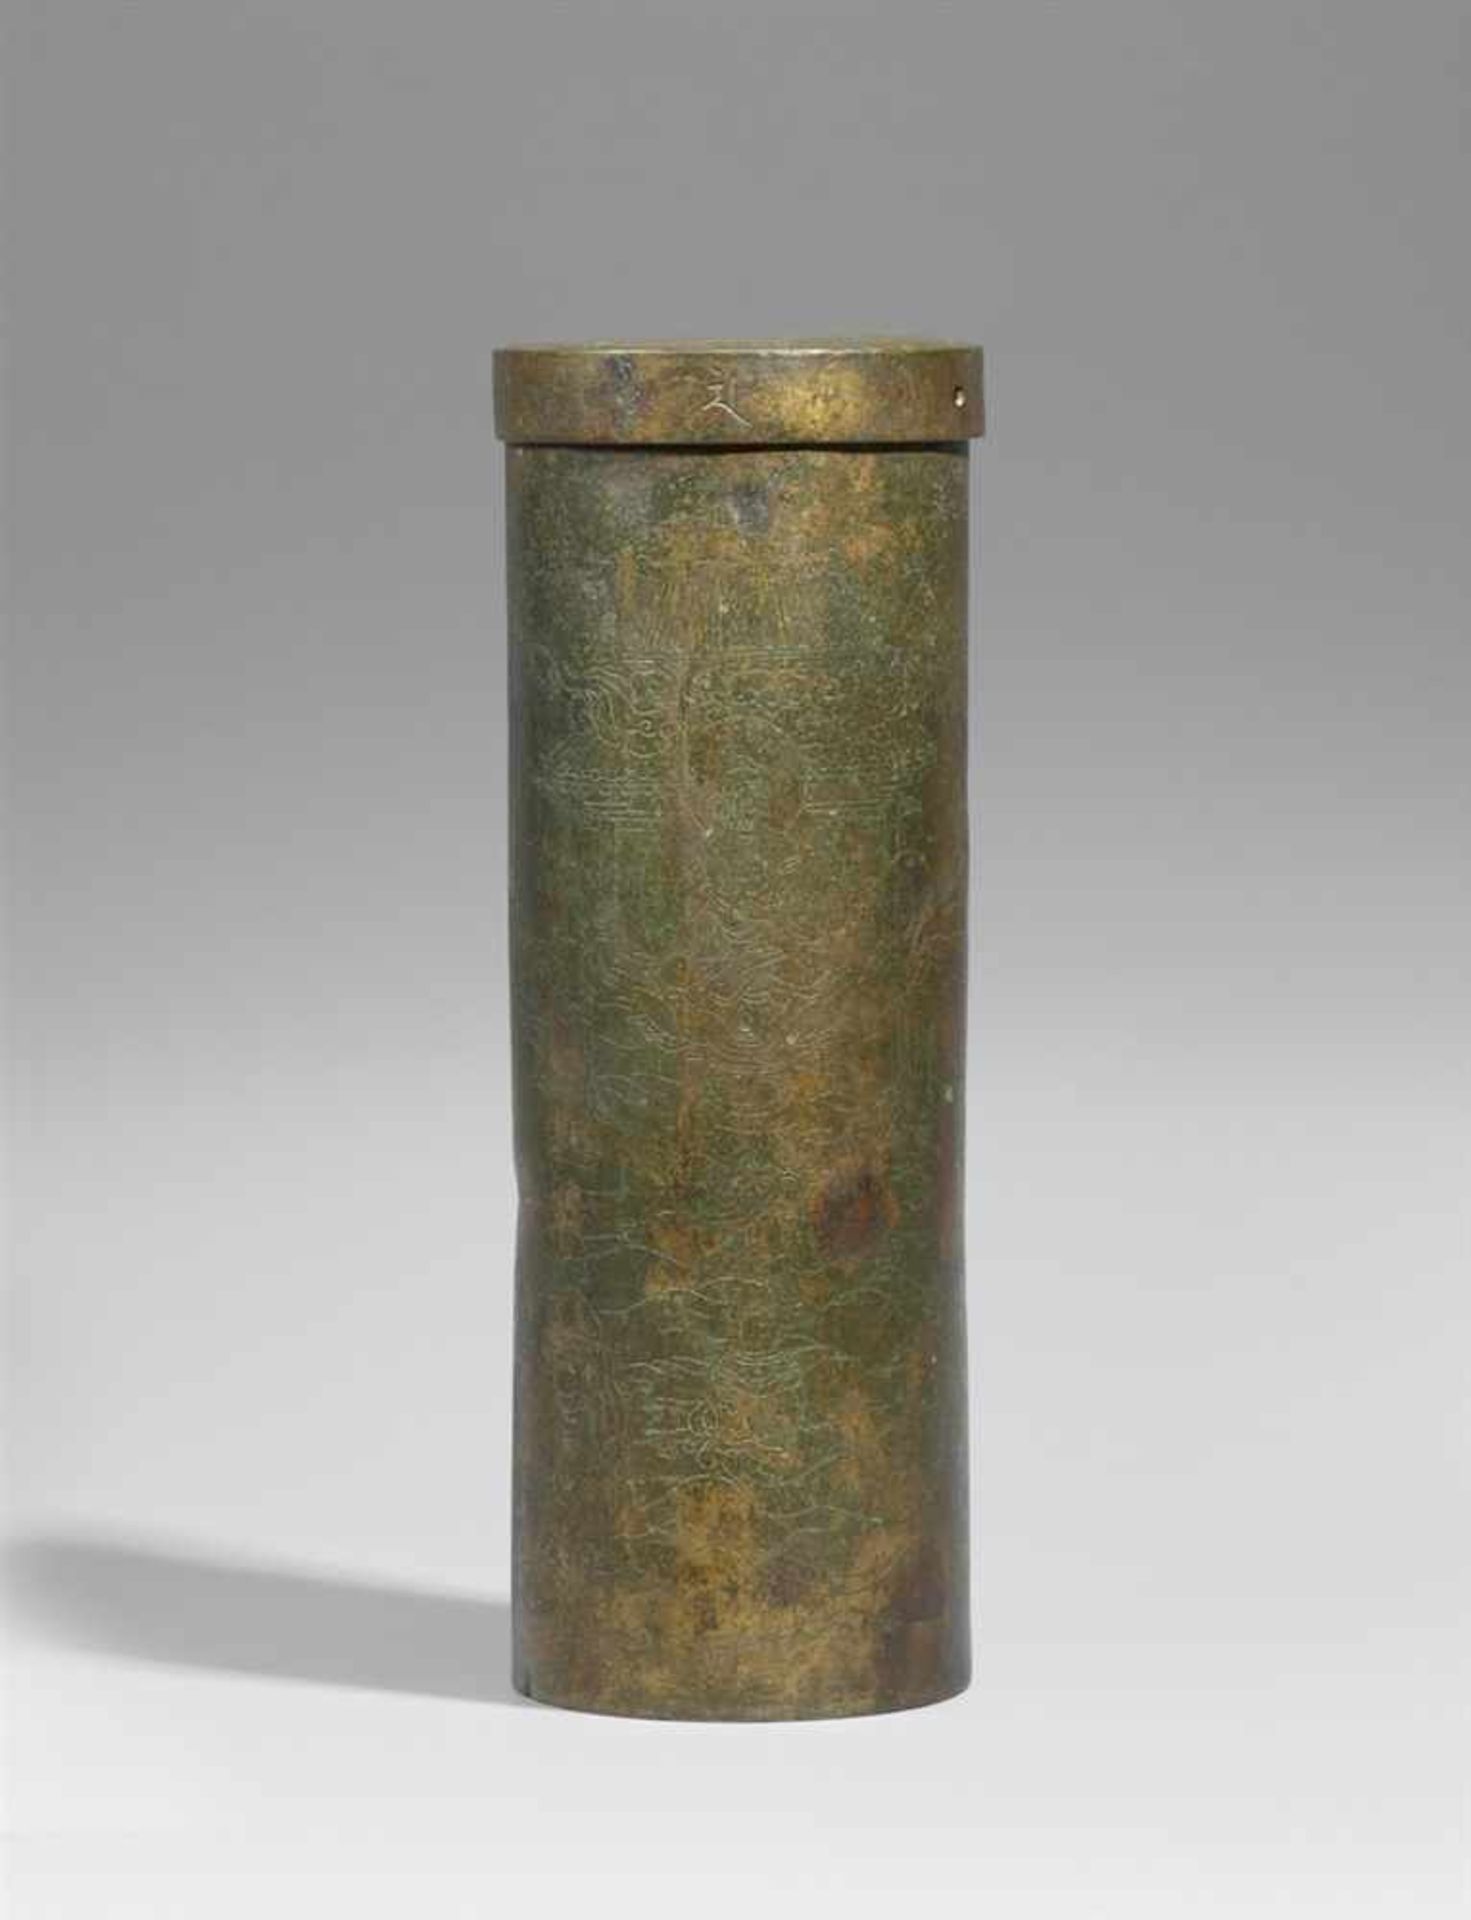 Sutrenbehälter (kyôzutsu) mit flachem Deckel. Bronze. 17./18. Jh. oder früher Zylindrisch. In Gravur